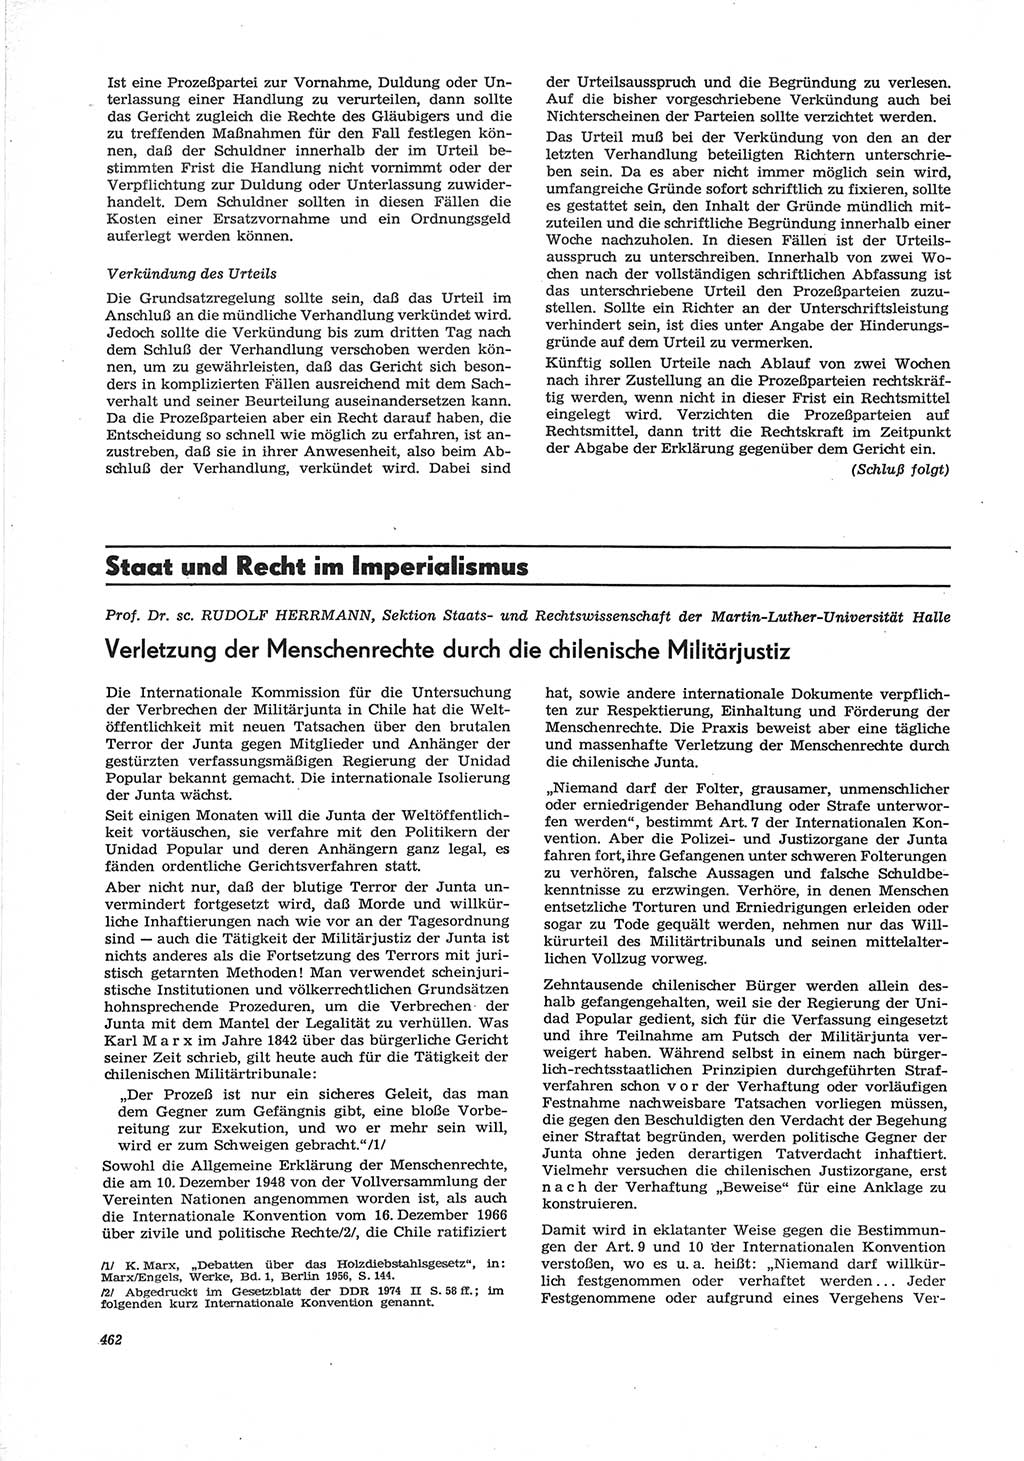 Neue Justiz (NJ), Zeitschrift für Recht und Rechtswissenschaft [Deutsche Demokratische Republik (DDR)], 28. Jahrgang 1974, Seite 462 (NJ DDR 1974, S. 462)